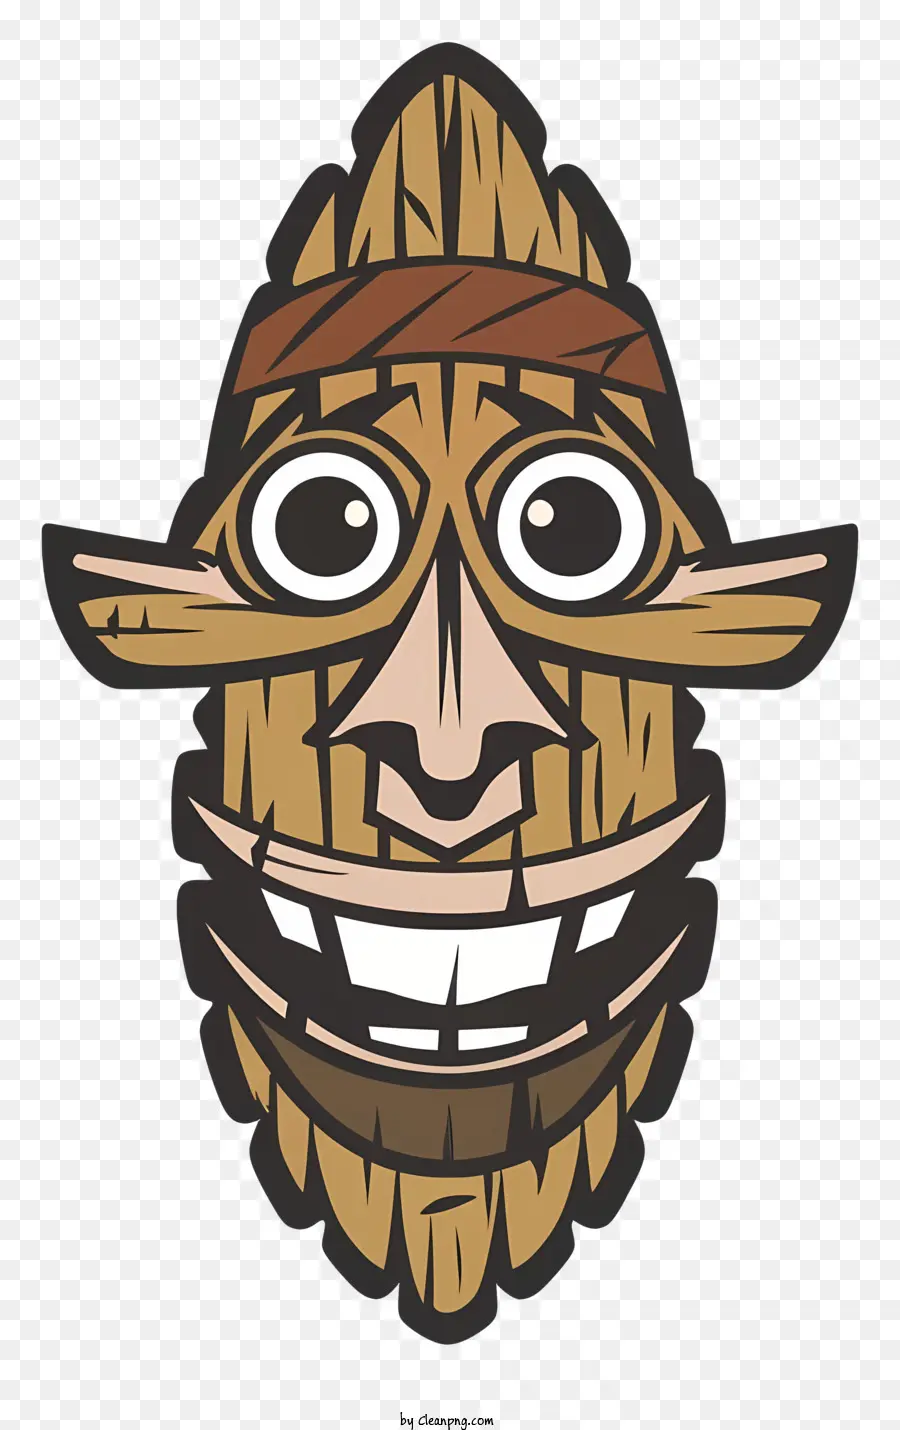 Nhân vật hoạt hình mỉm cười mặt nạ bằng gỗ băng rộng băng đầu làm bằng lá nhắm mắt - Nhân vật mặt nạ bằng gỗ hoạt hình với biểu cảm hạnh phúc